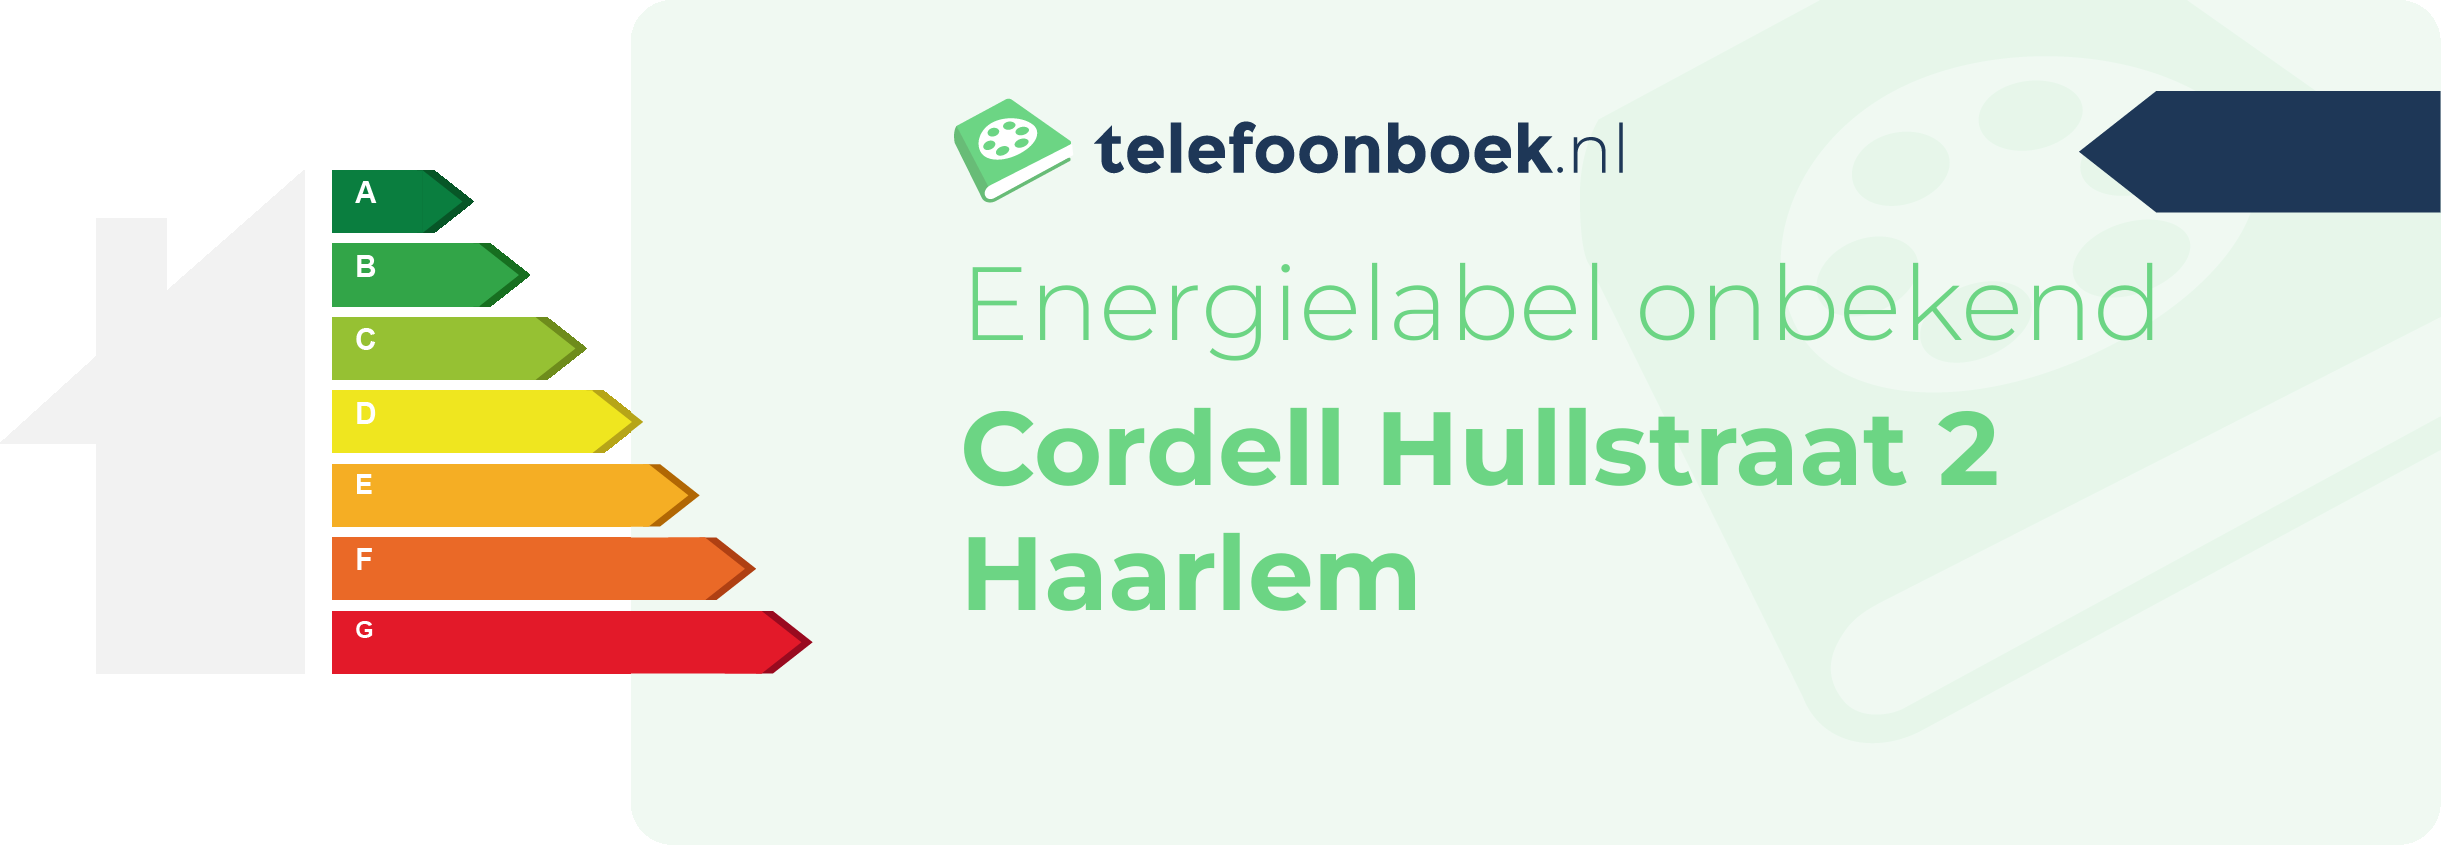 Energielabel Cordell Hullstraat 2 Haarlem